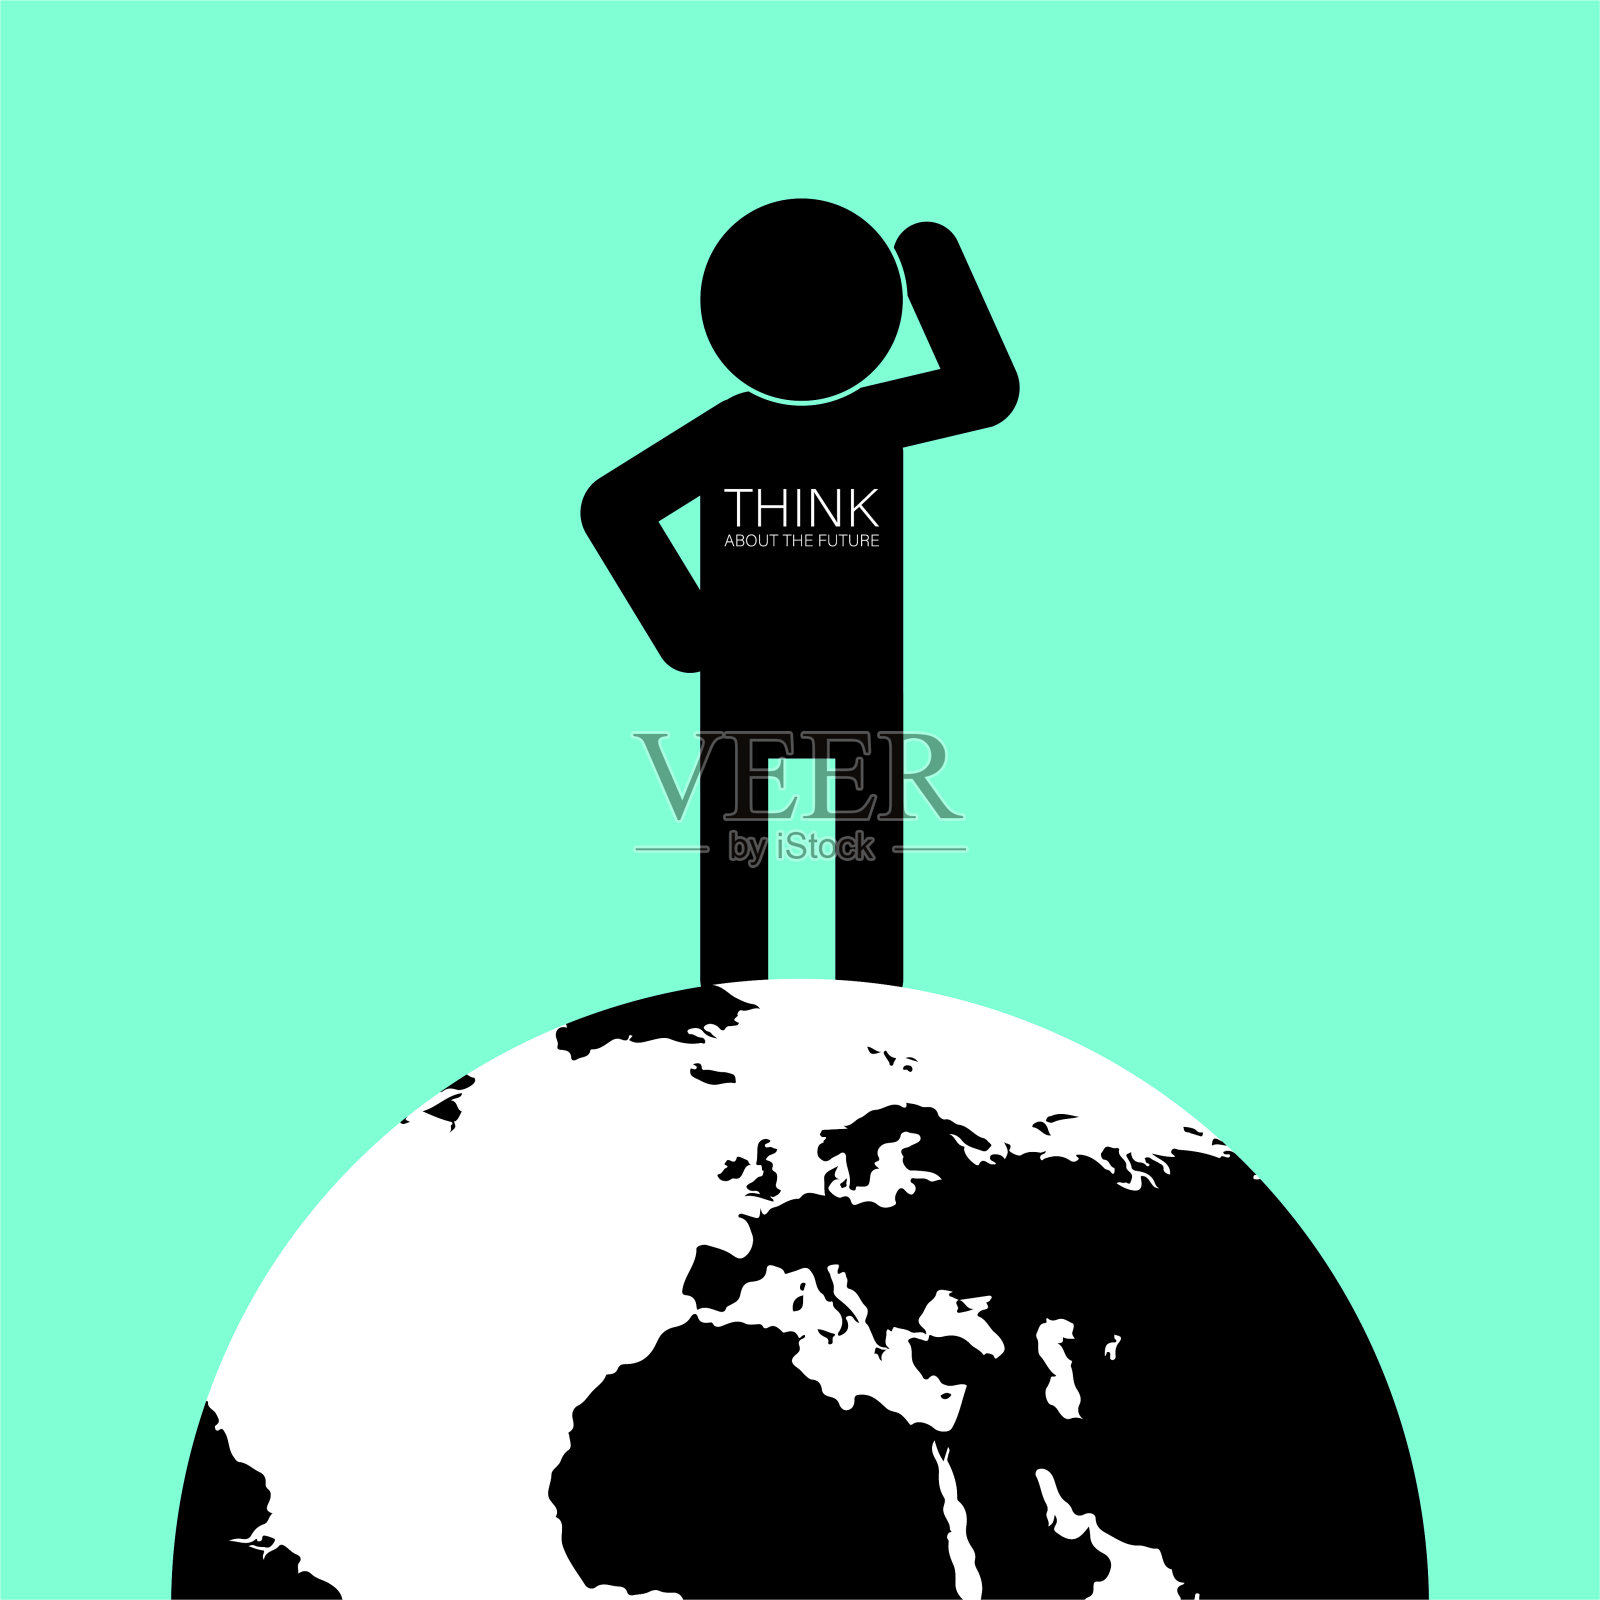 地球日世界卫生日一个戴着地球仪的男人的黑色剪影。标语是在胸前思考未来。网页设计元素插画图片素材